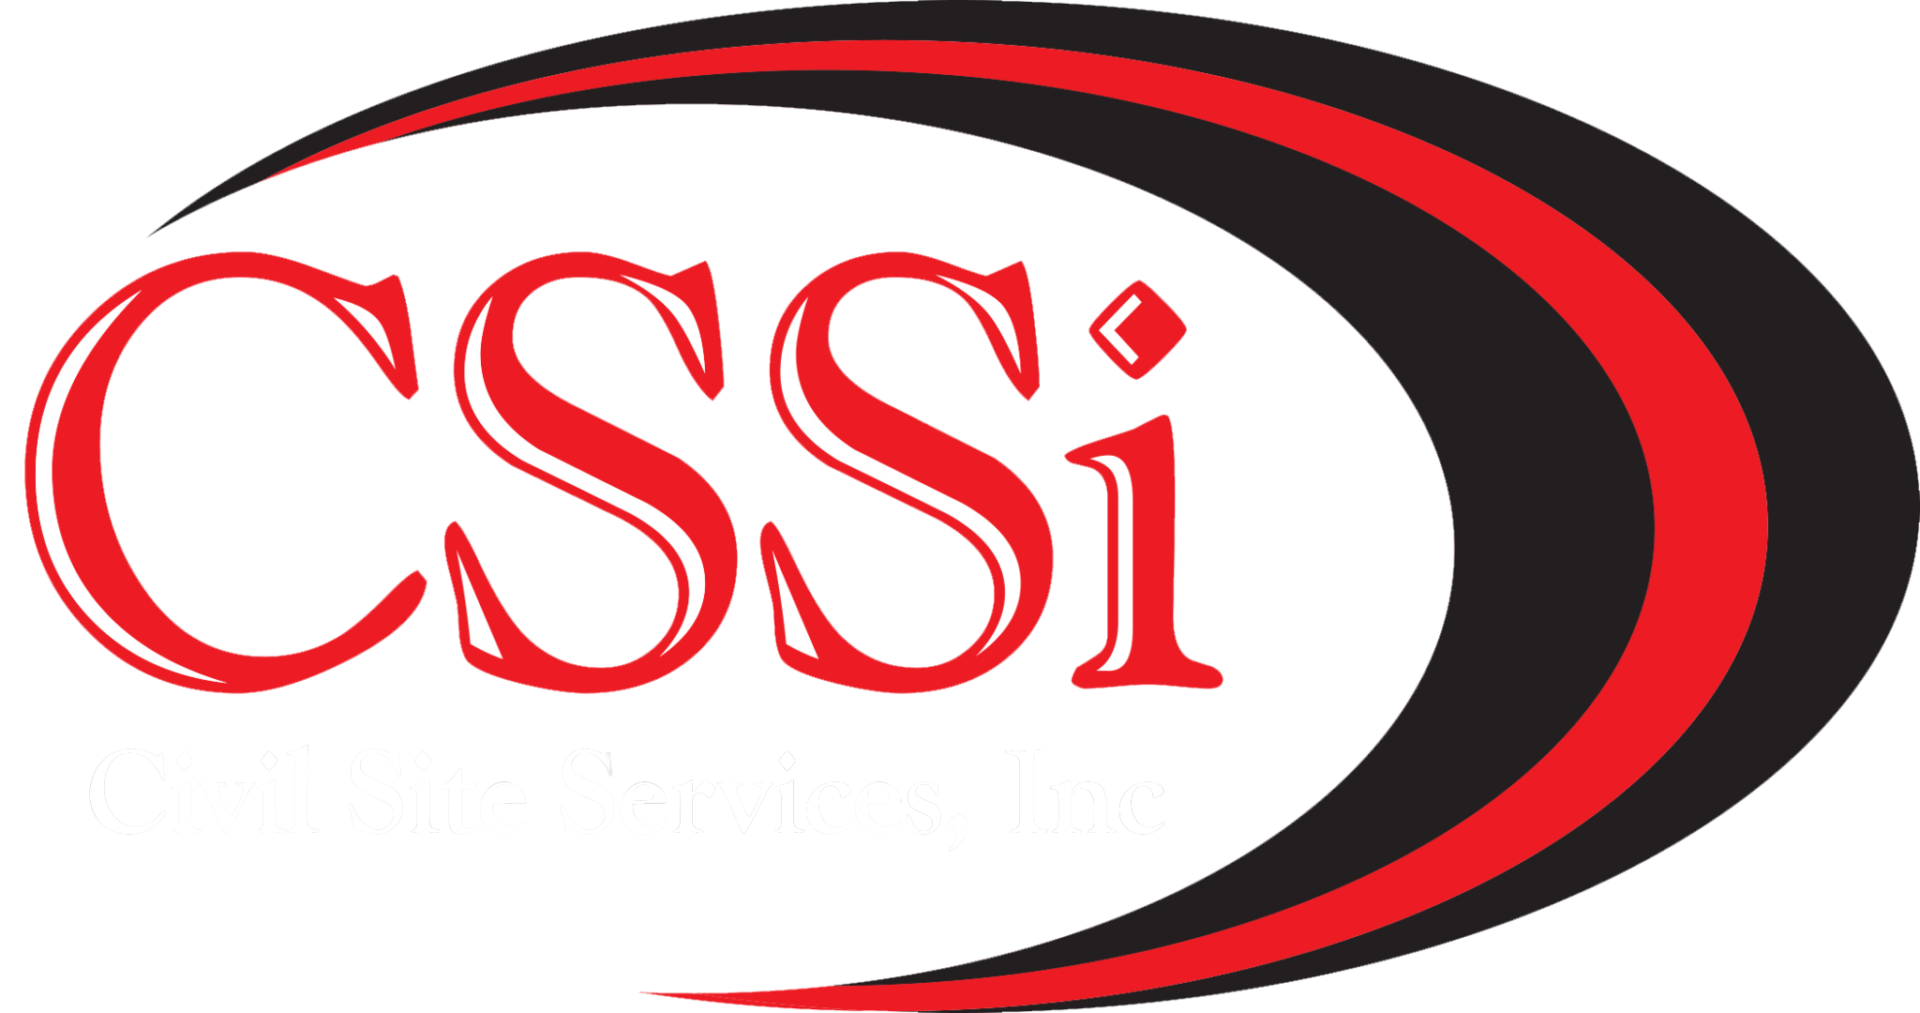 Civil Site Services, Inc